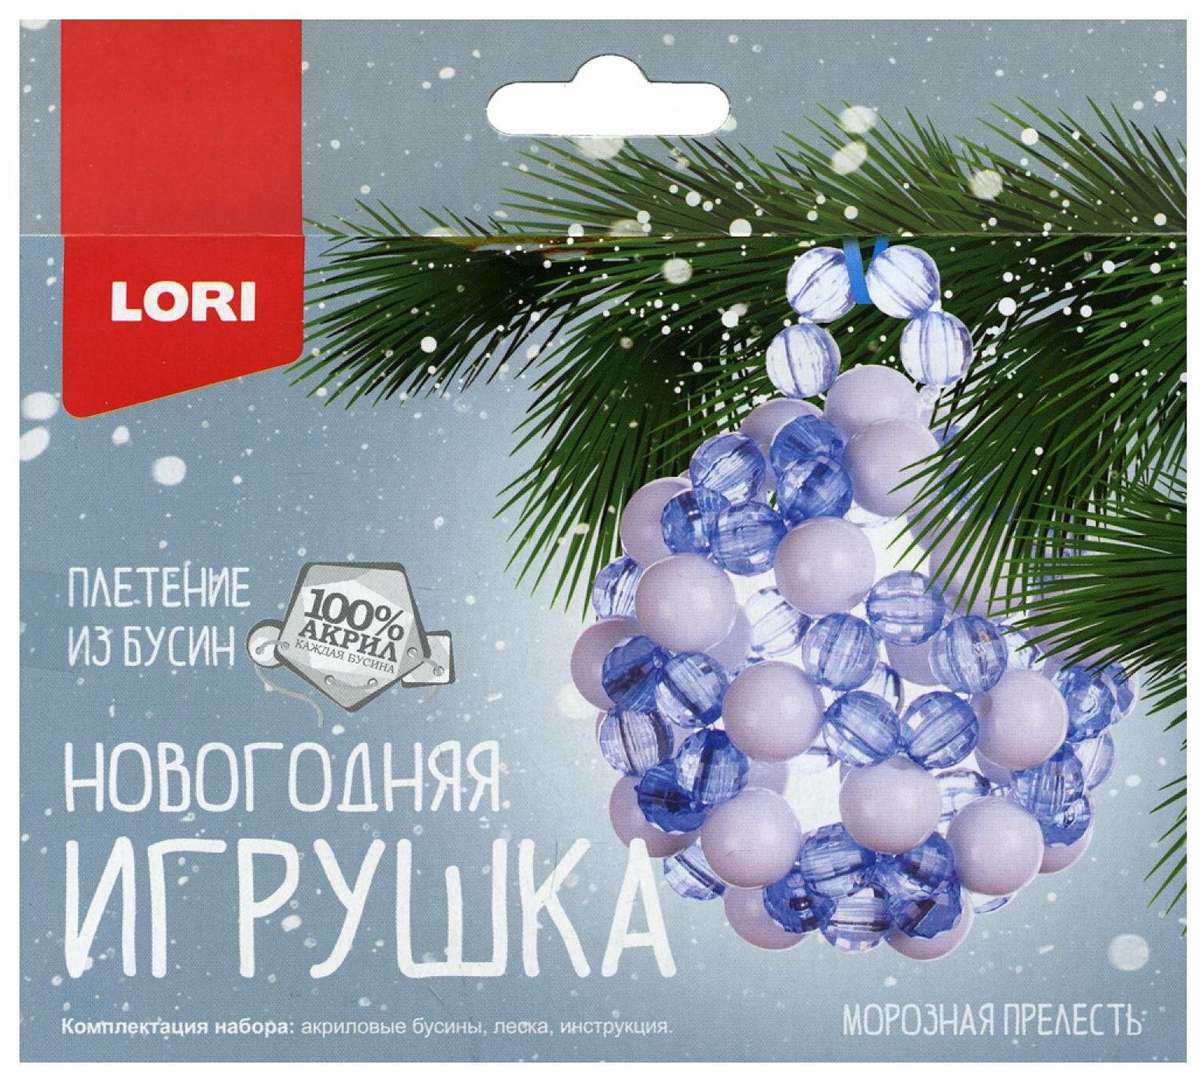 Плетение из бусин Пз/Бус-015 Морозная прелесть ТМ Лори - Нижнекамск 